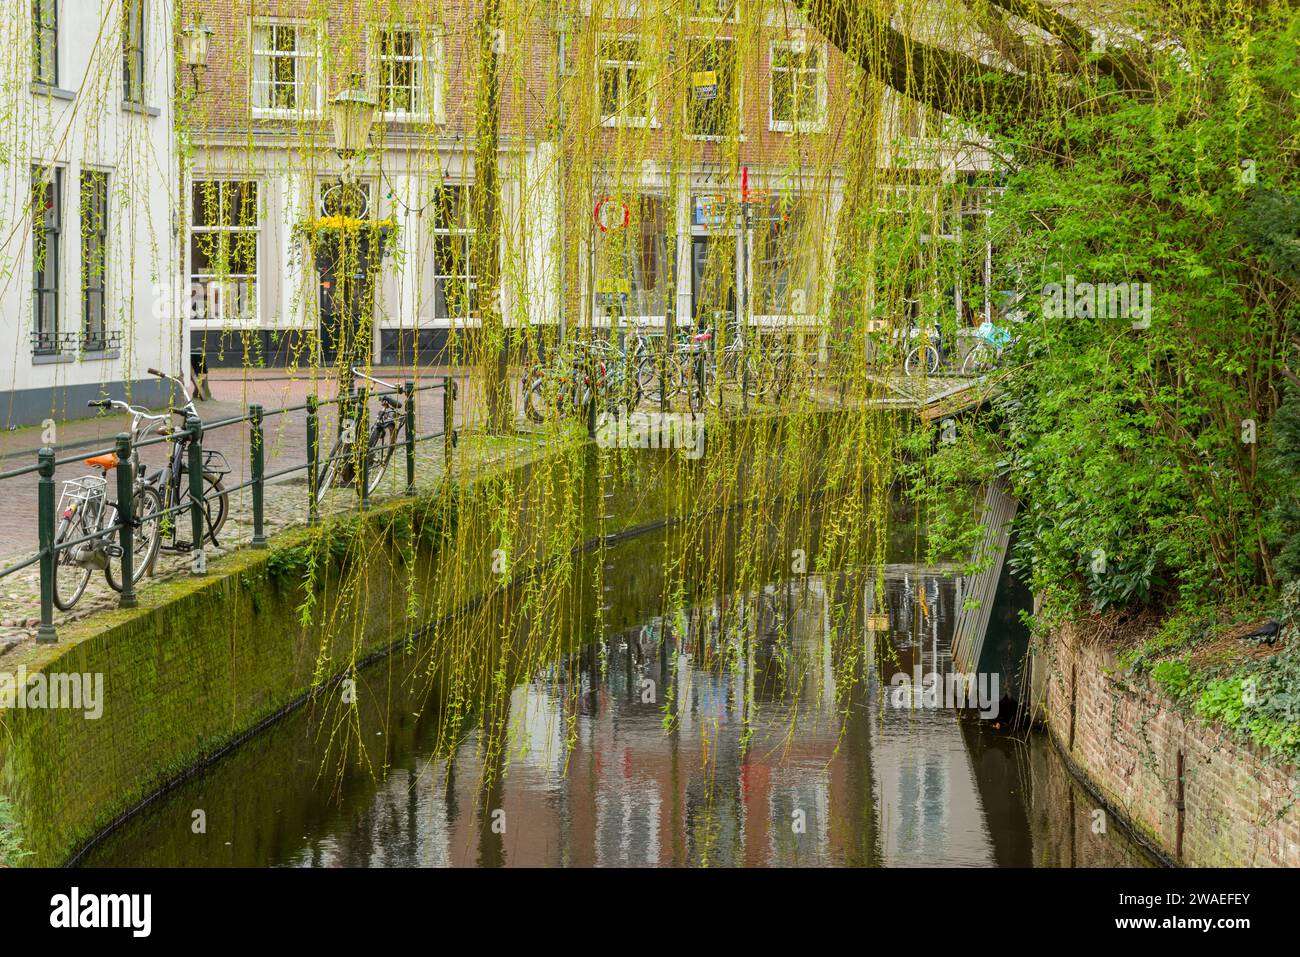 Un saule pleureur (Salix babylonica) au début du printemps suspendu au-dessus d'un canal dans la ville néerlandaise d'Amersfoort, aux pays-Bas. Banque D'Images